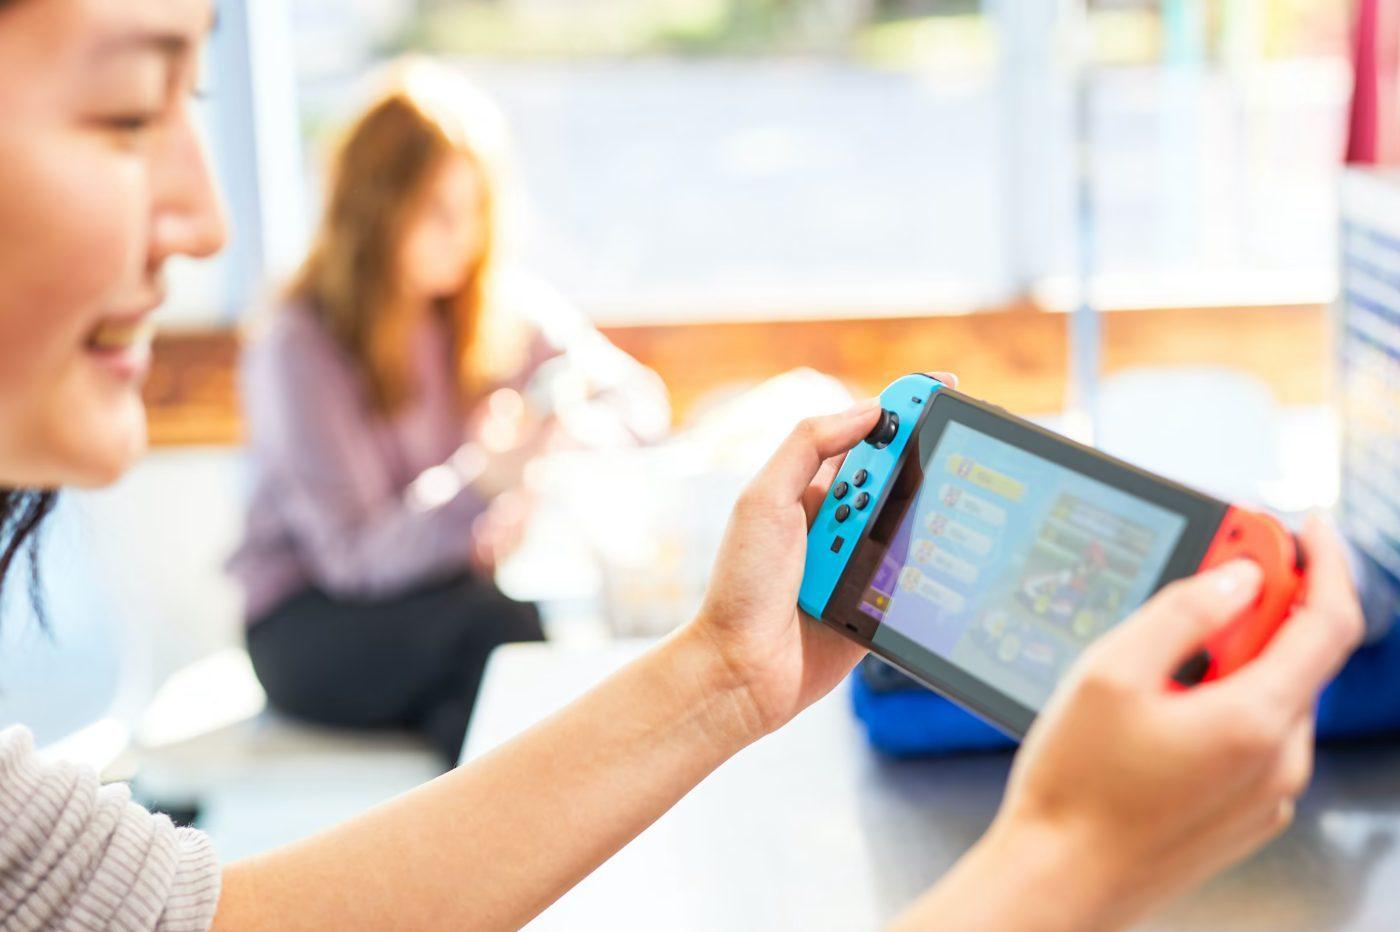 Nintendo Switch : meilleur prix, fiche technique et actualité